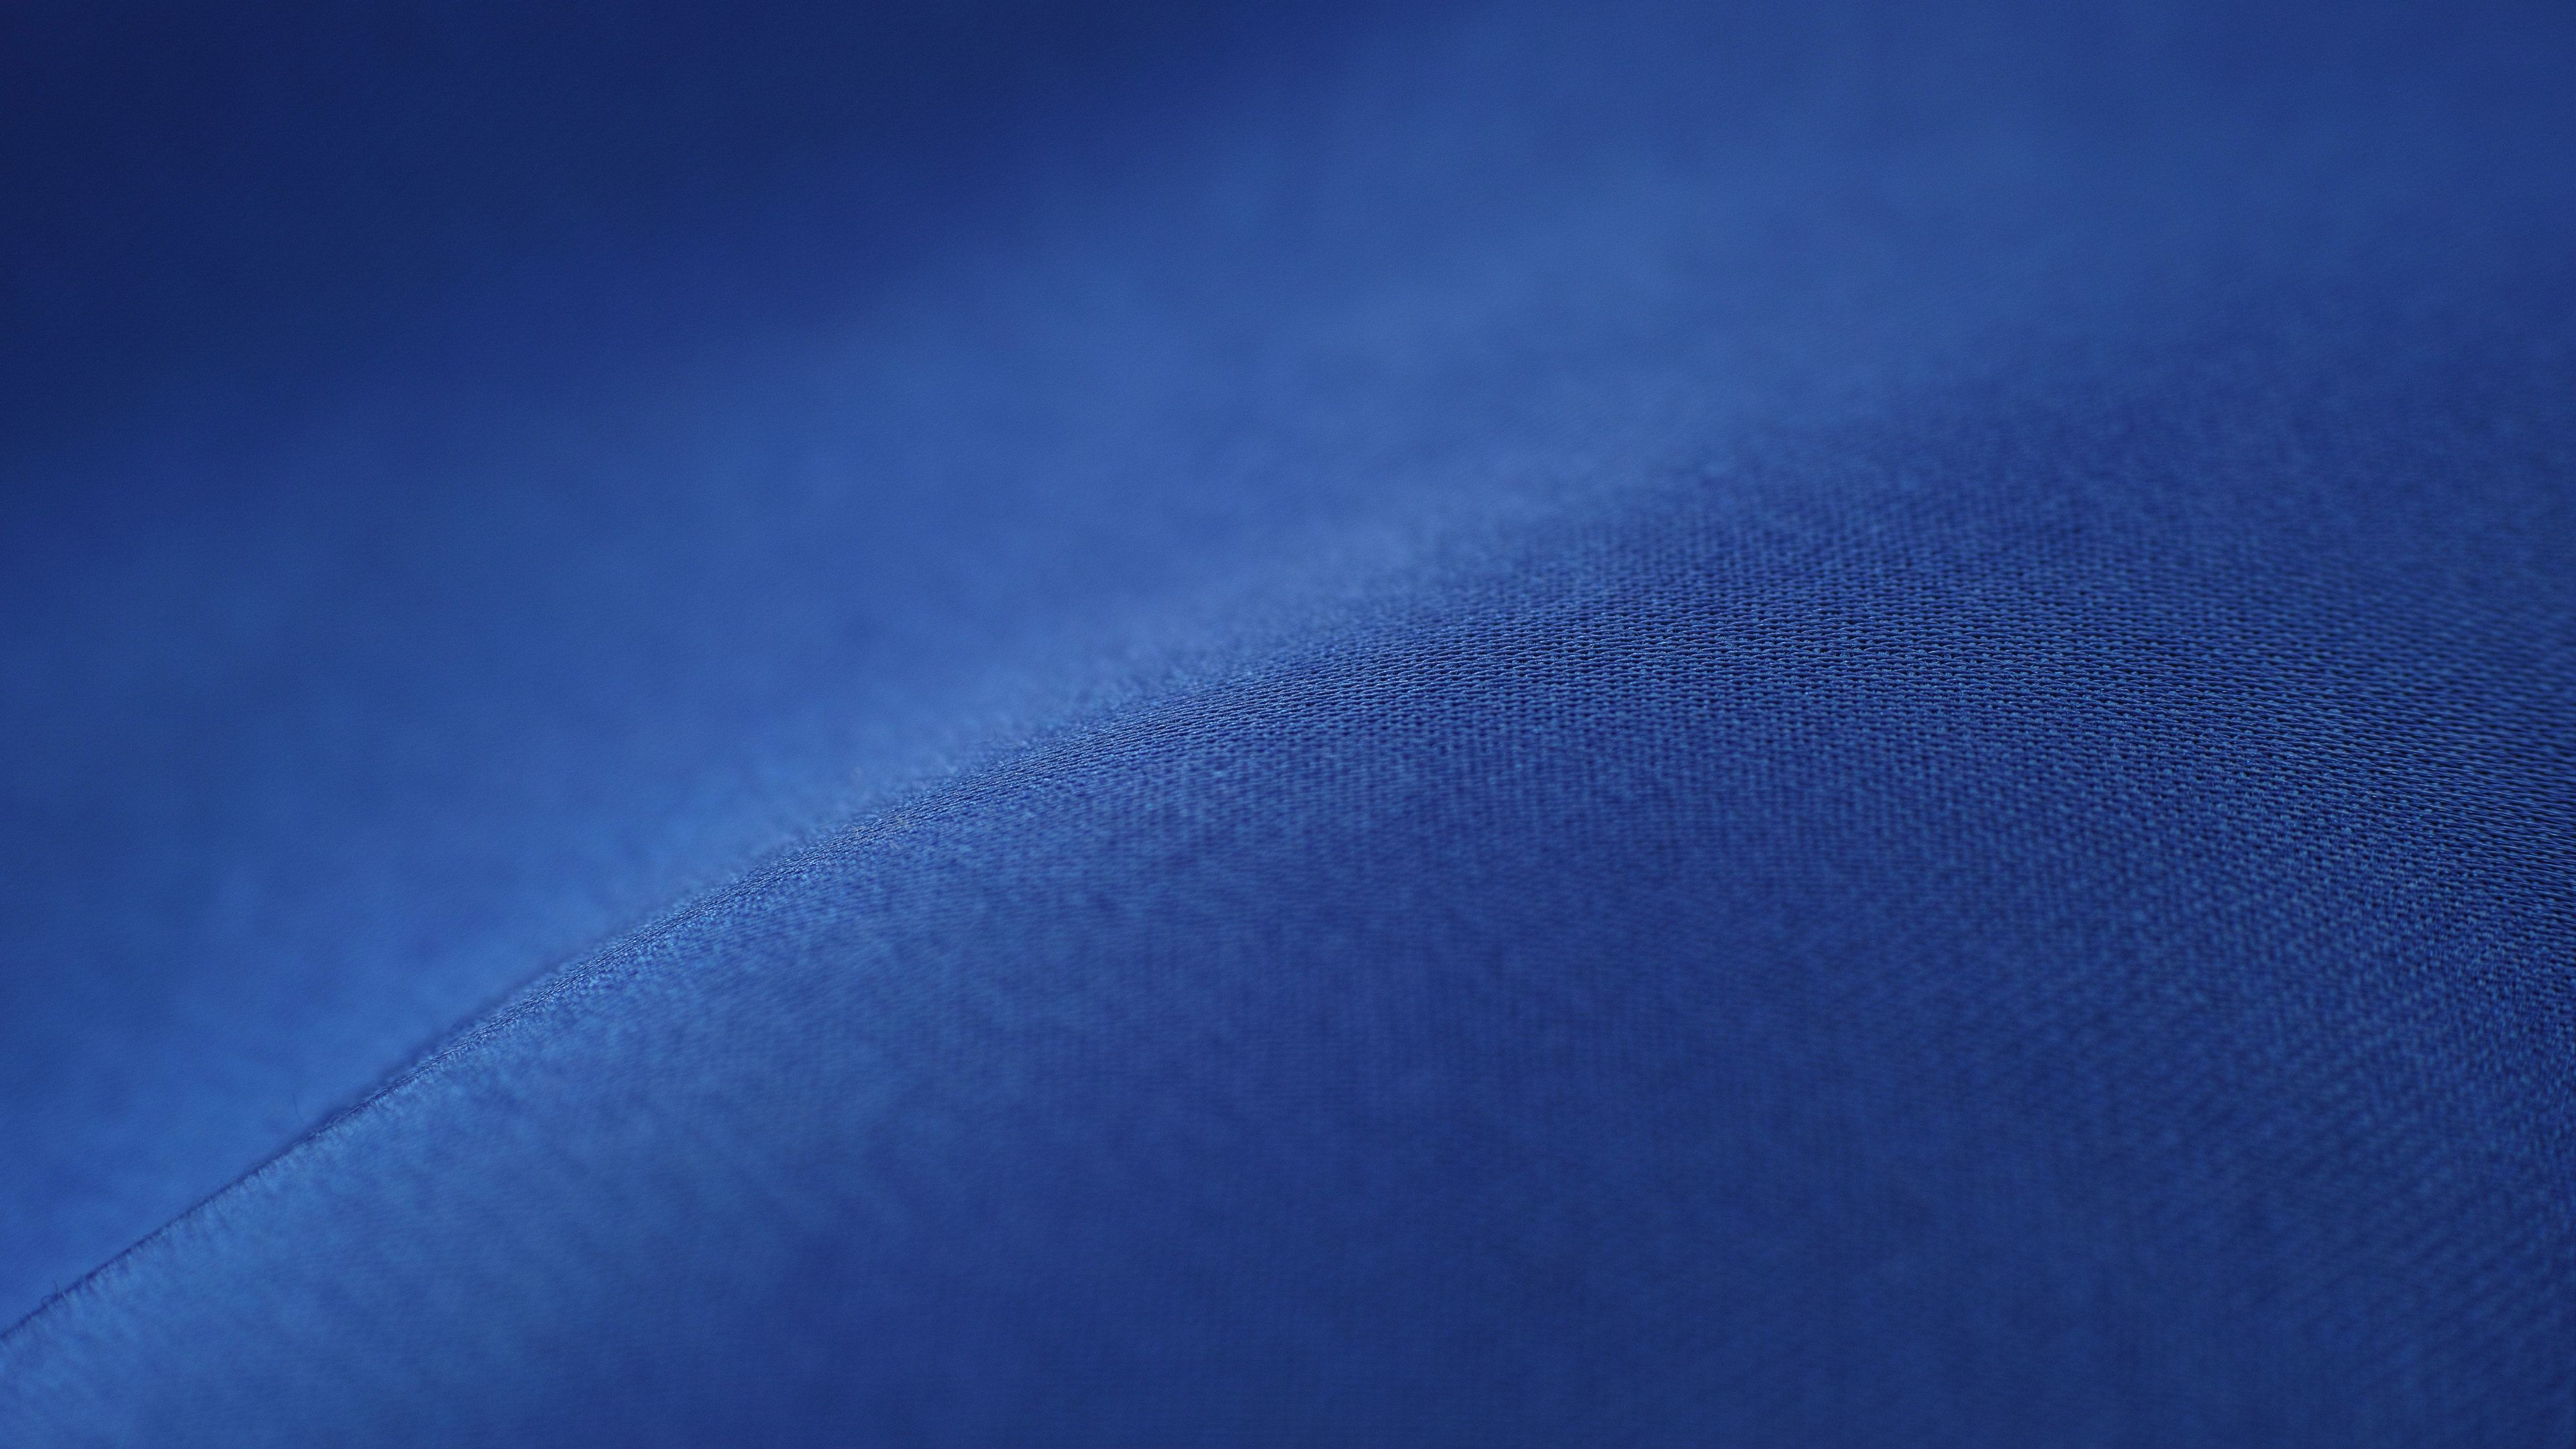 Blue Fabric Pattern 8k Pattern Wallpaper, Hd Wallpaper, Abstract Wallpaper, 8k Wallpaper, 5k Wallpaper, 4. Blue Fabric Pattern, Fabric Patterns, HD Wallpaper